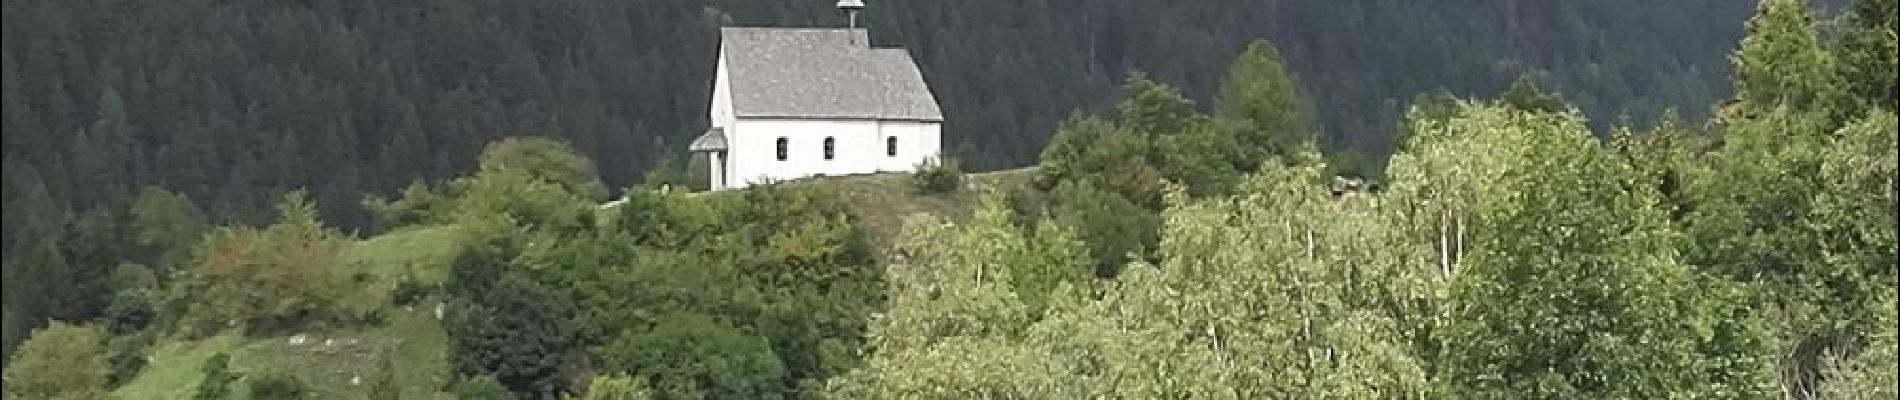 POI Ernen - vue sur l'église de Mühlebach - Photo